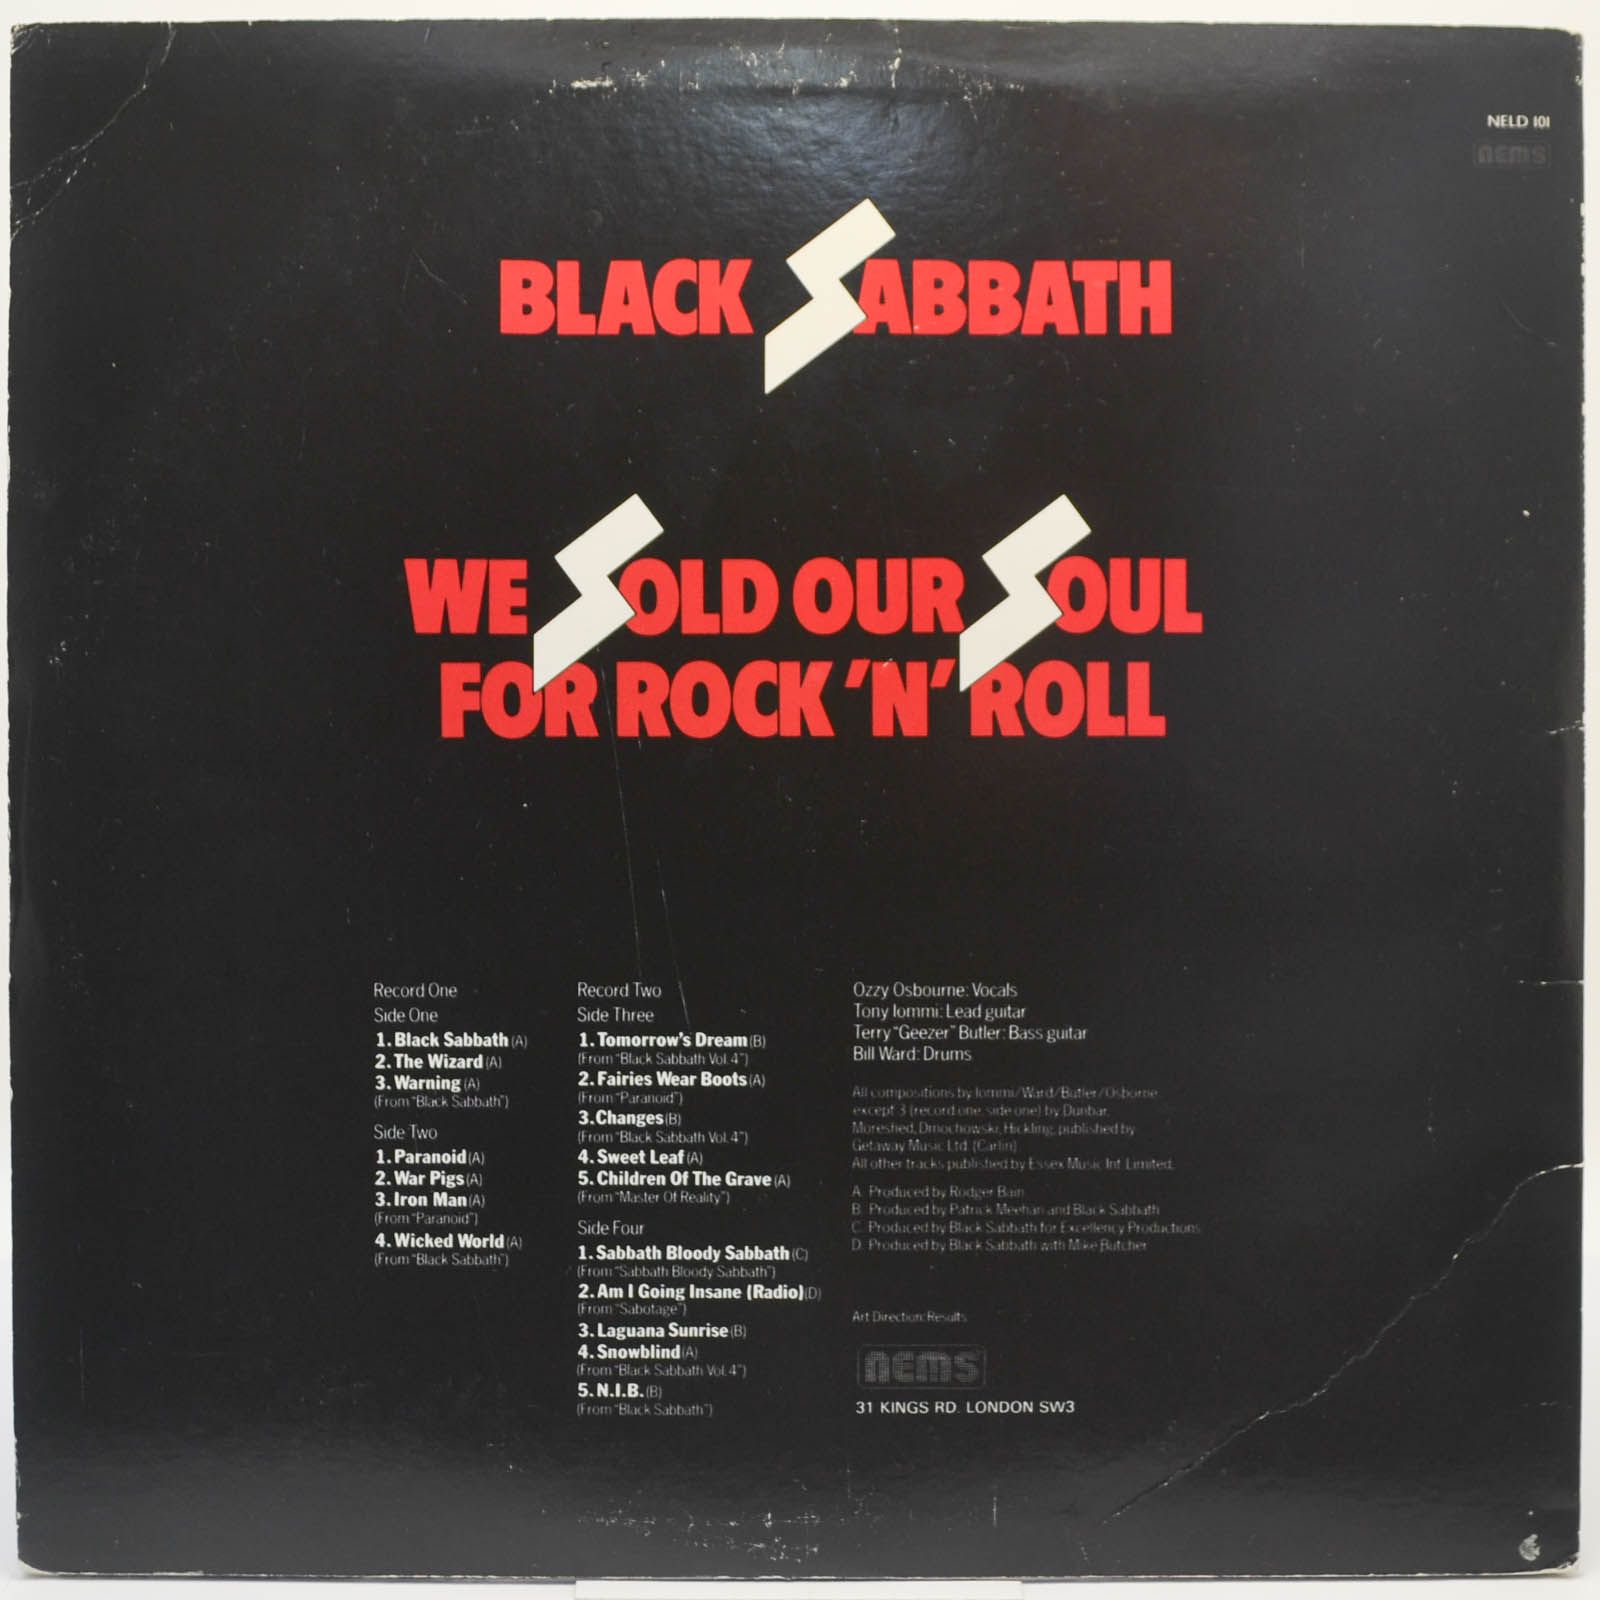 Black Sabbath — We Sold Our Soul For Rock 'N' Roll (2LP, UK), 1975